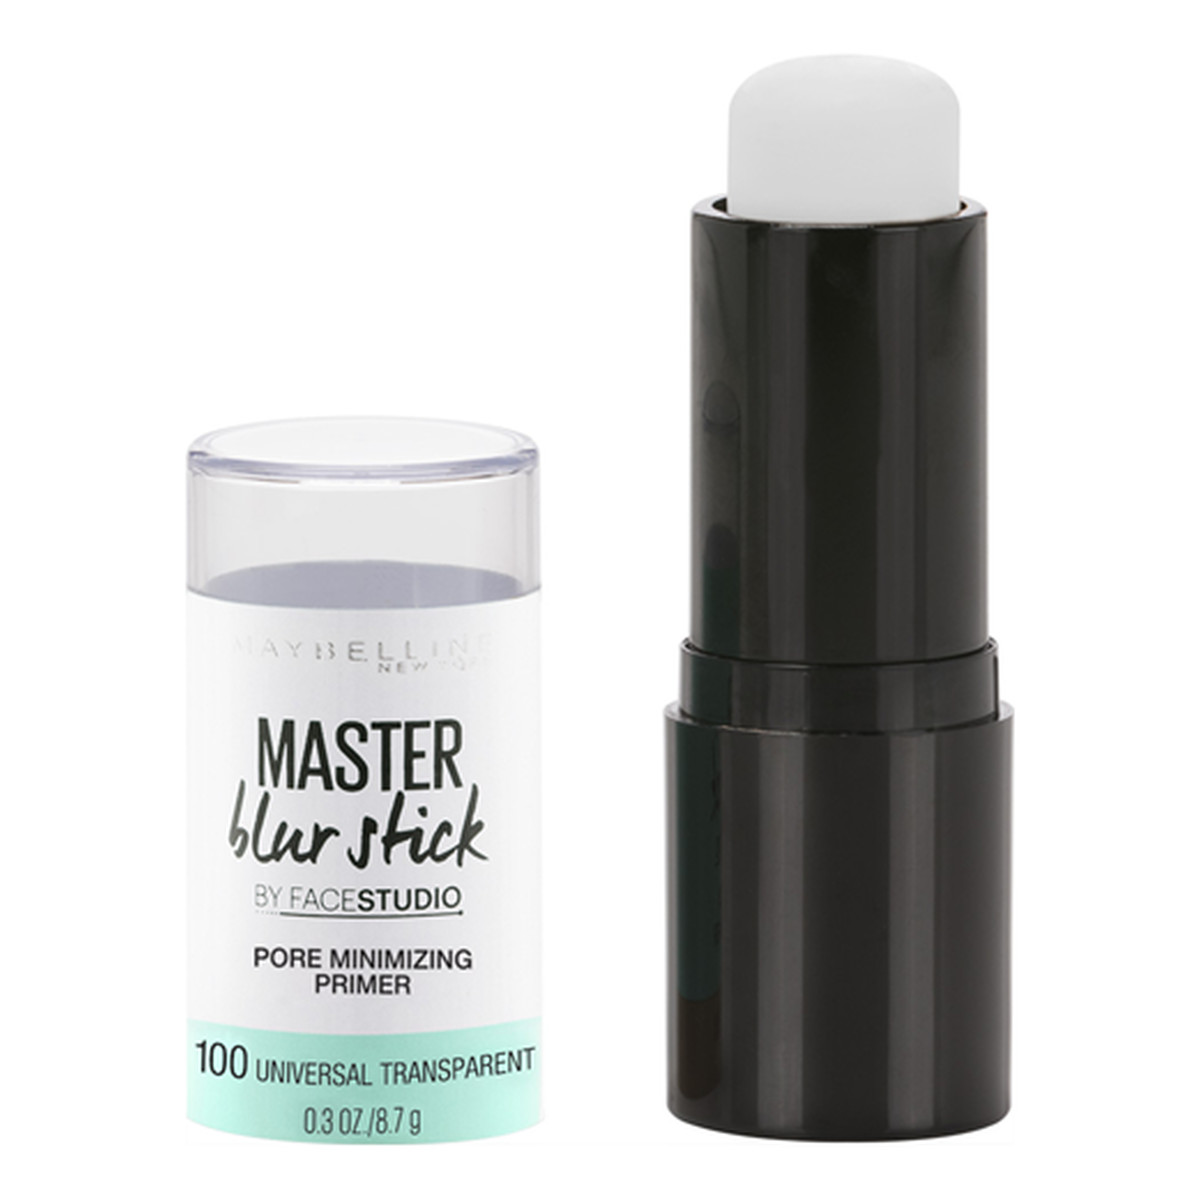 Maybelline Master Blur Stick Baza pod makijaż minimalizujący widoczność porów 9g